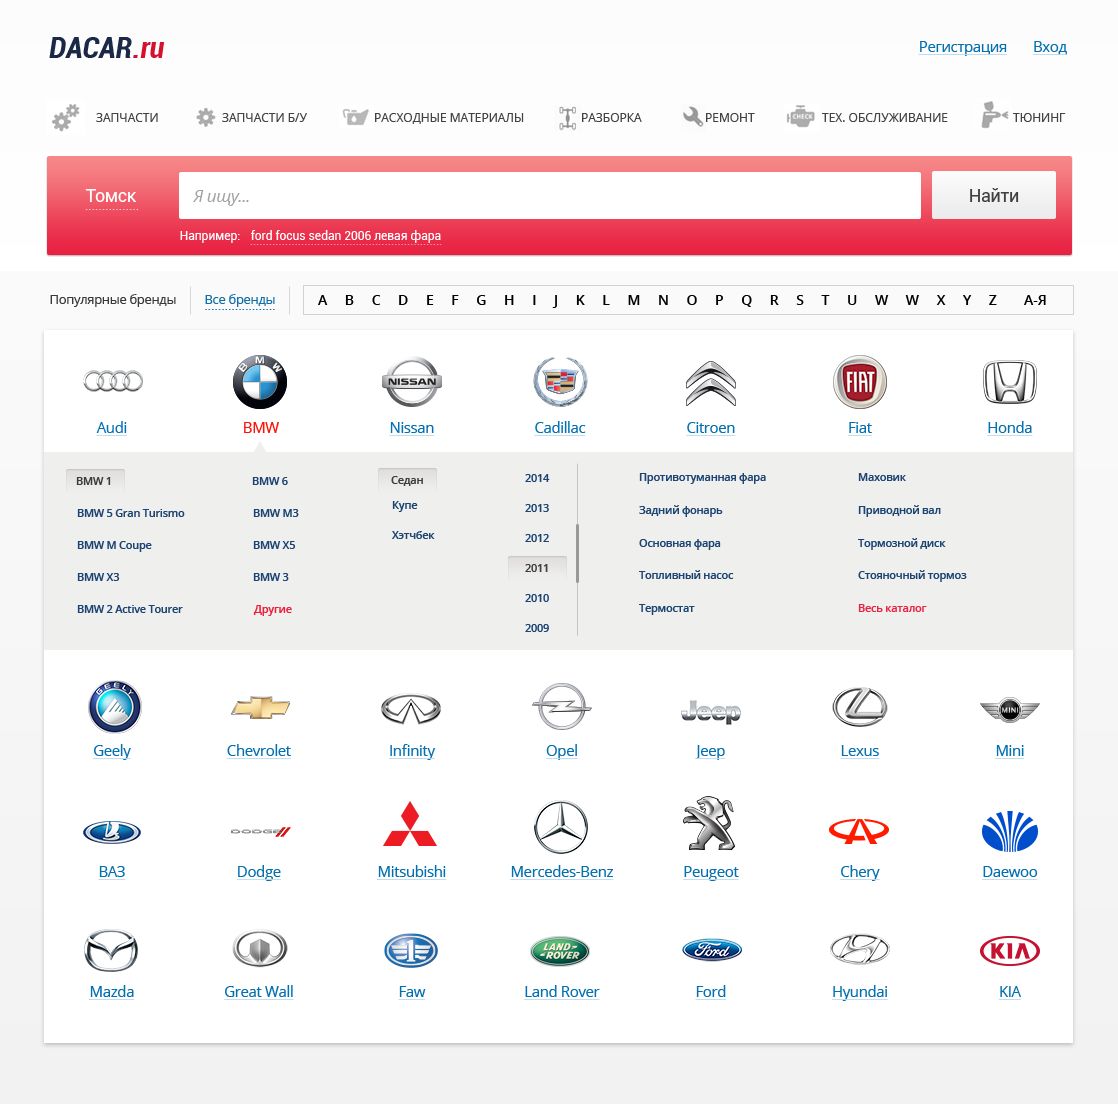 Дизайн для главной страницы Dacar.ru - дизайнер kia87